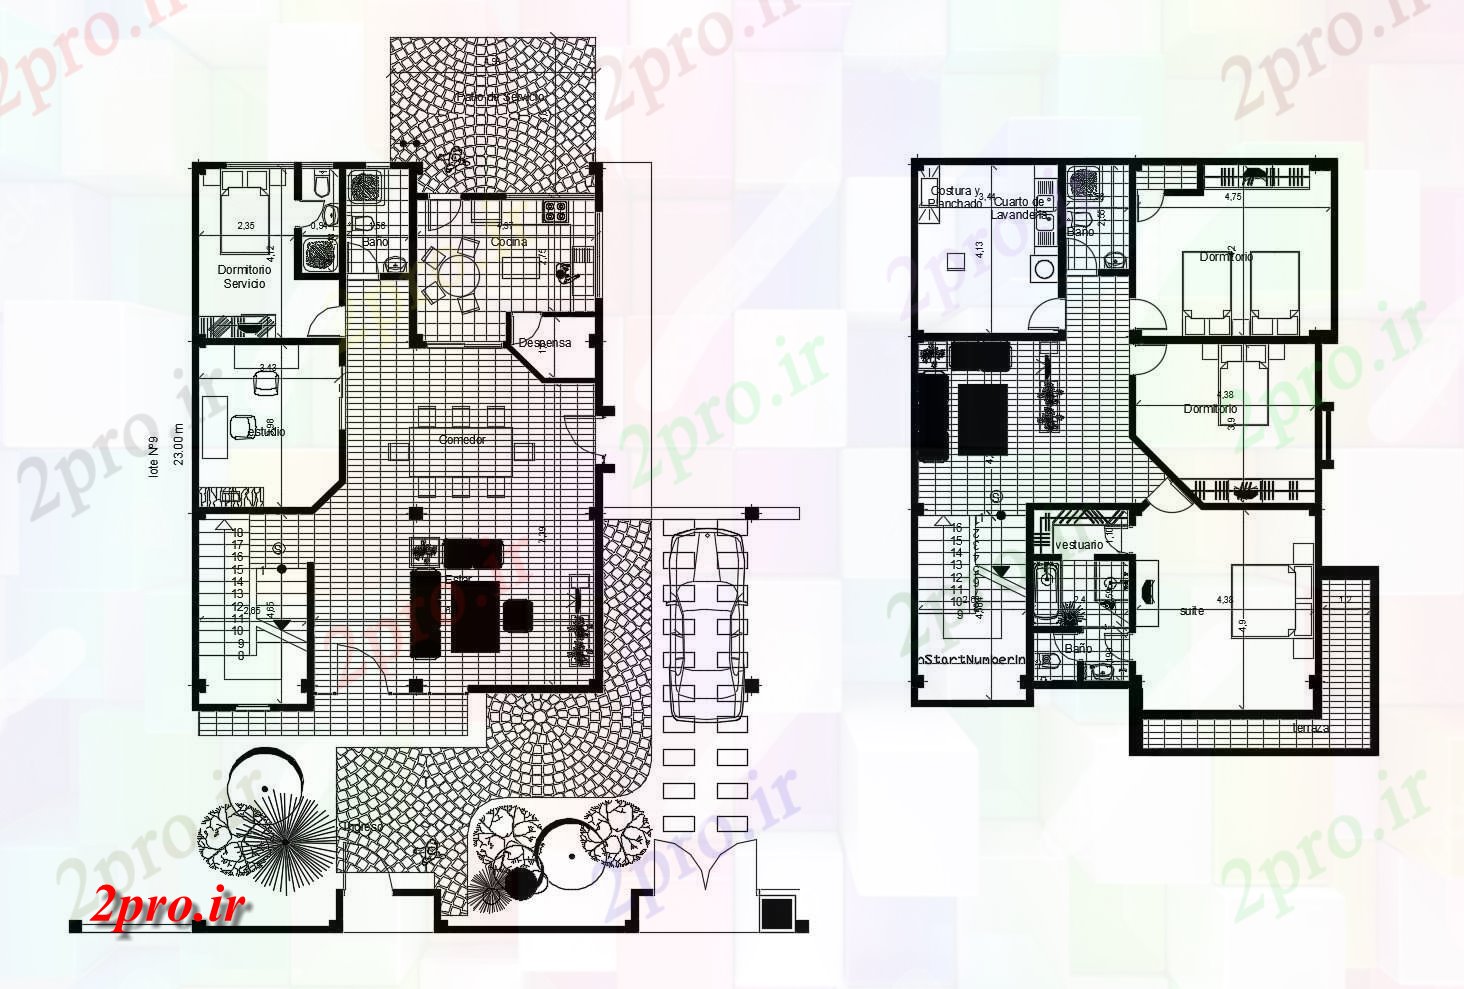 دانلود نقشه مسکونی ، ویلایی ، آپارتمان طرحی خانه 1500mtr X 2300mtr را با اطلاعات مبلمان 10 در 13 متر (کد86516)